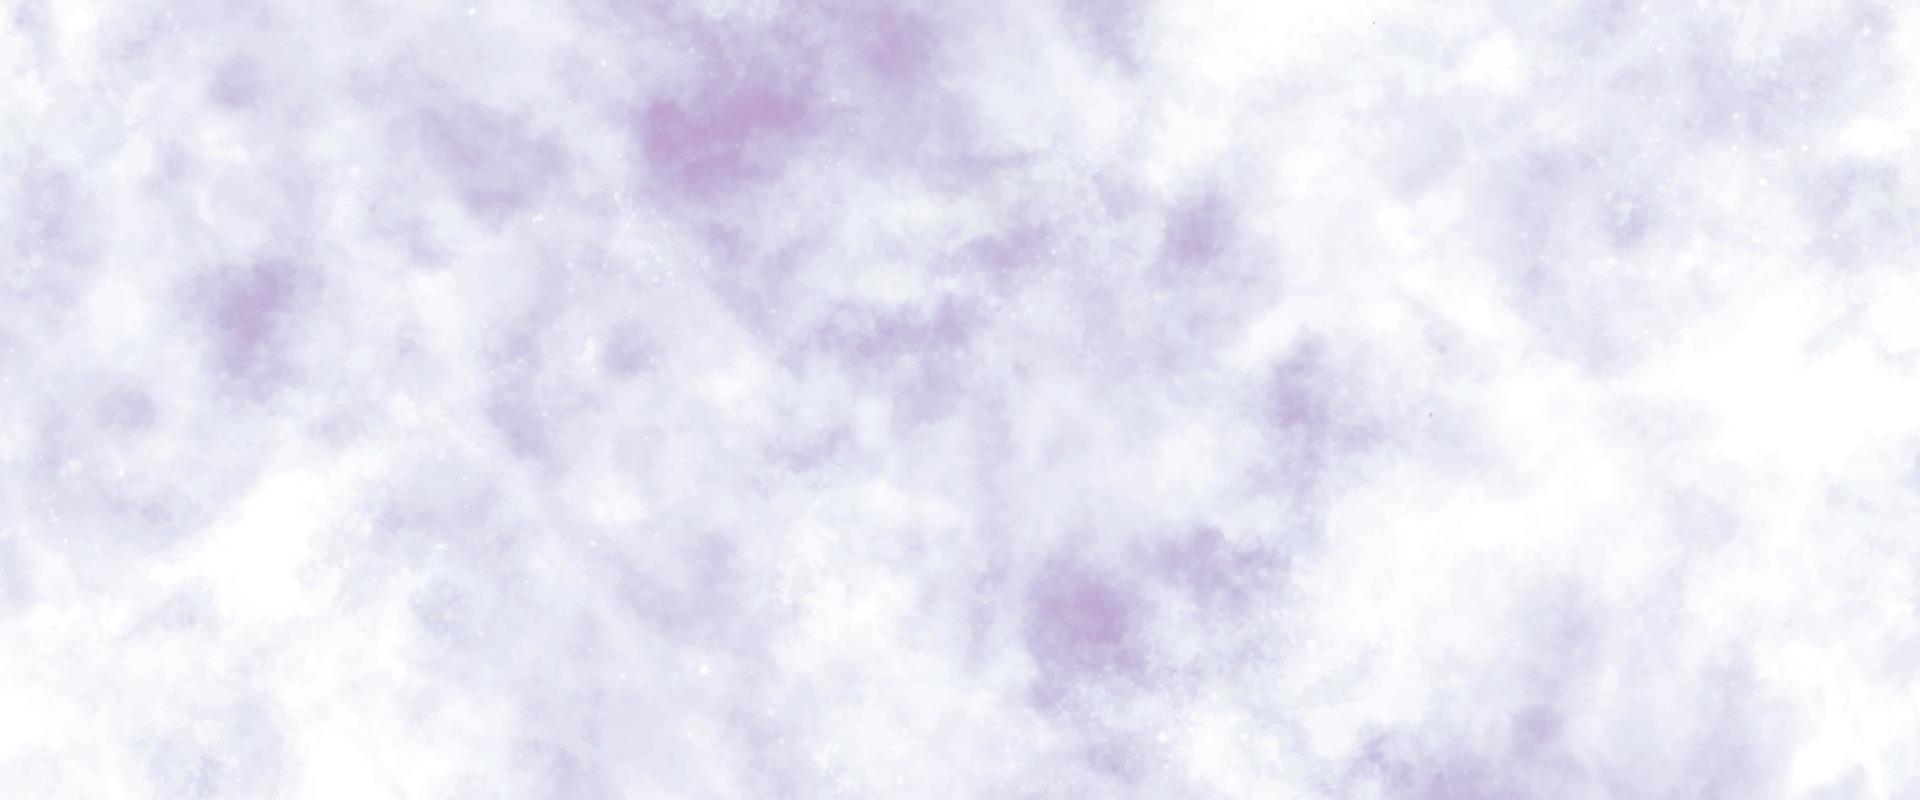 leggero morbido rosa e viola acquerello sfondo. liscio pastello inchiostro colore splendore aquarelle macchia illustrazione. multicolore occhiali da sole mano disegnato. colorato grungy carta strutturato. astratto blob dipingere spruzzo vettore